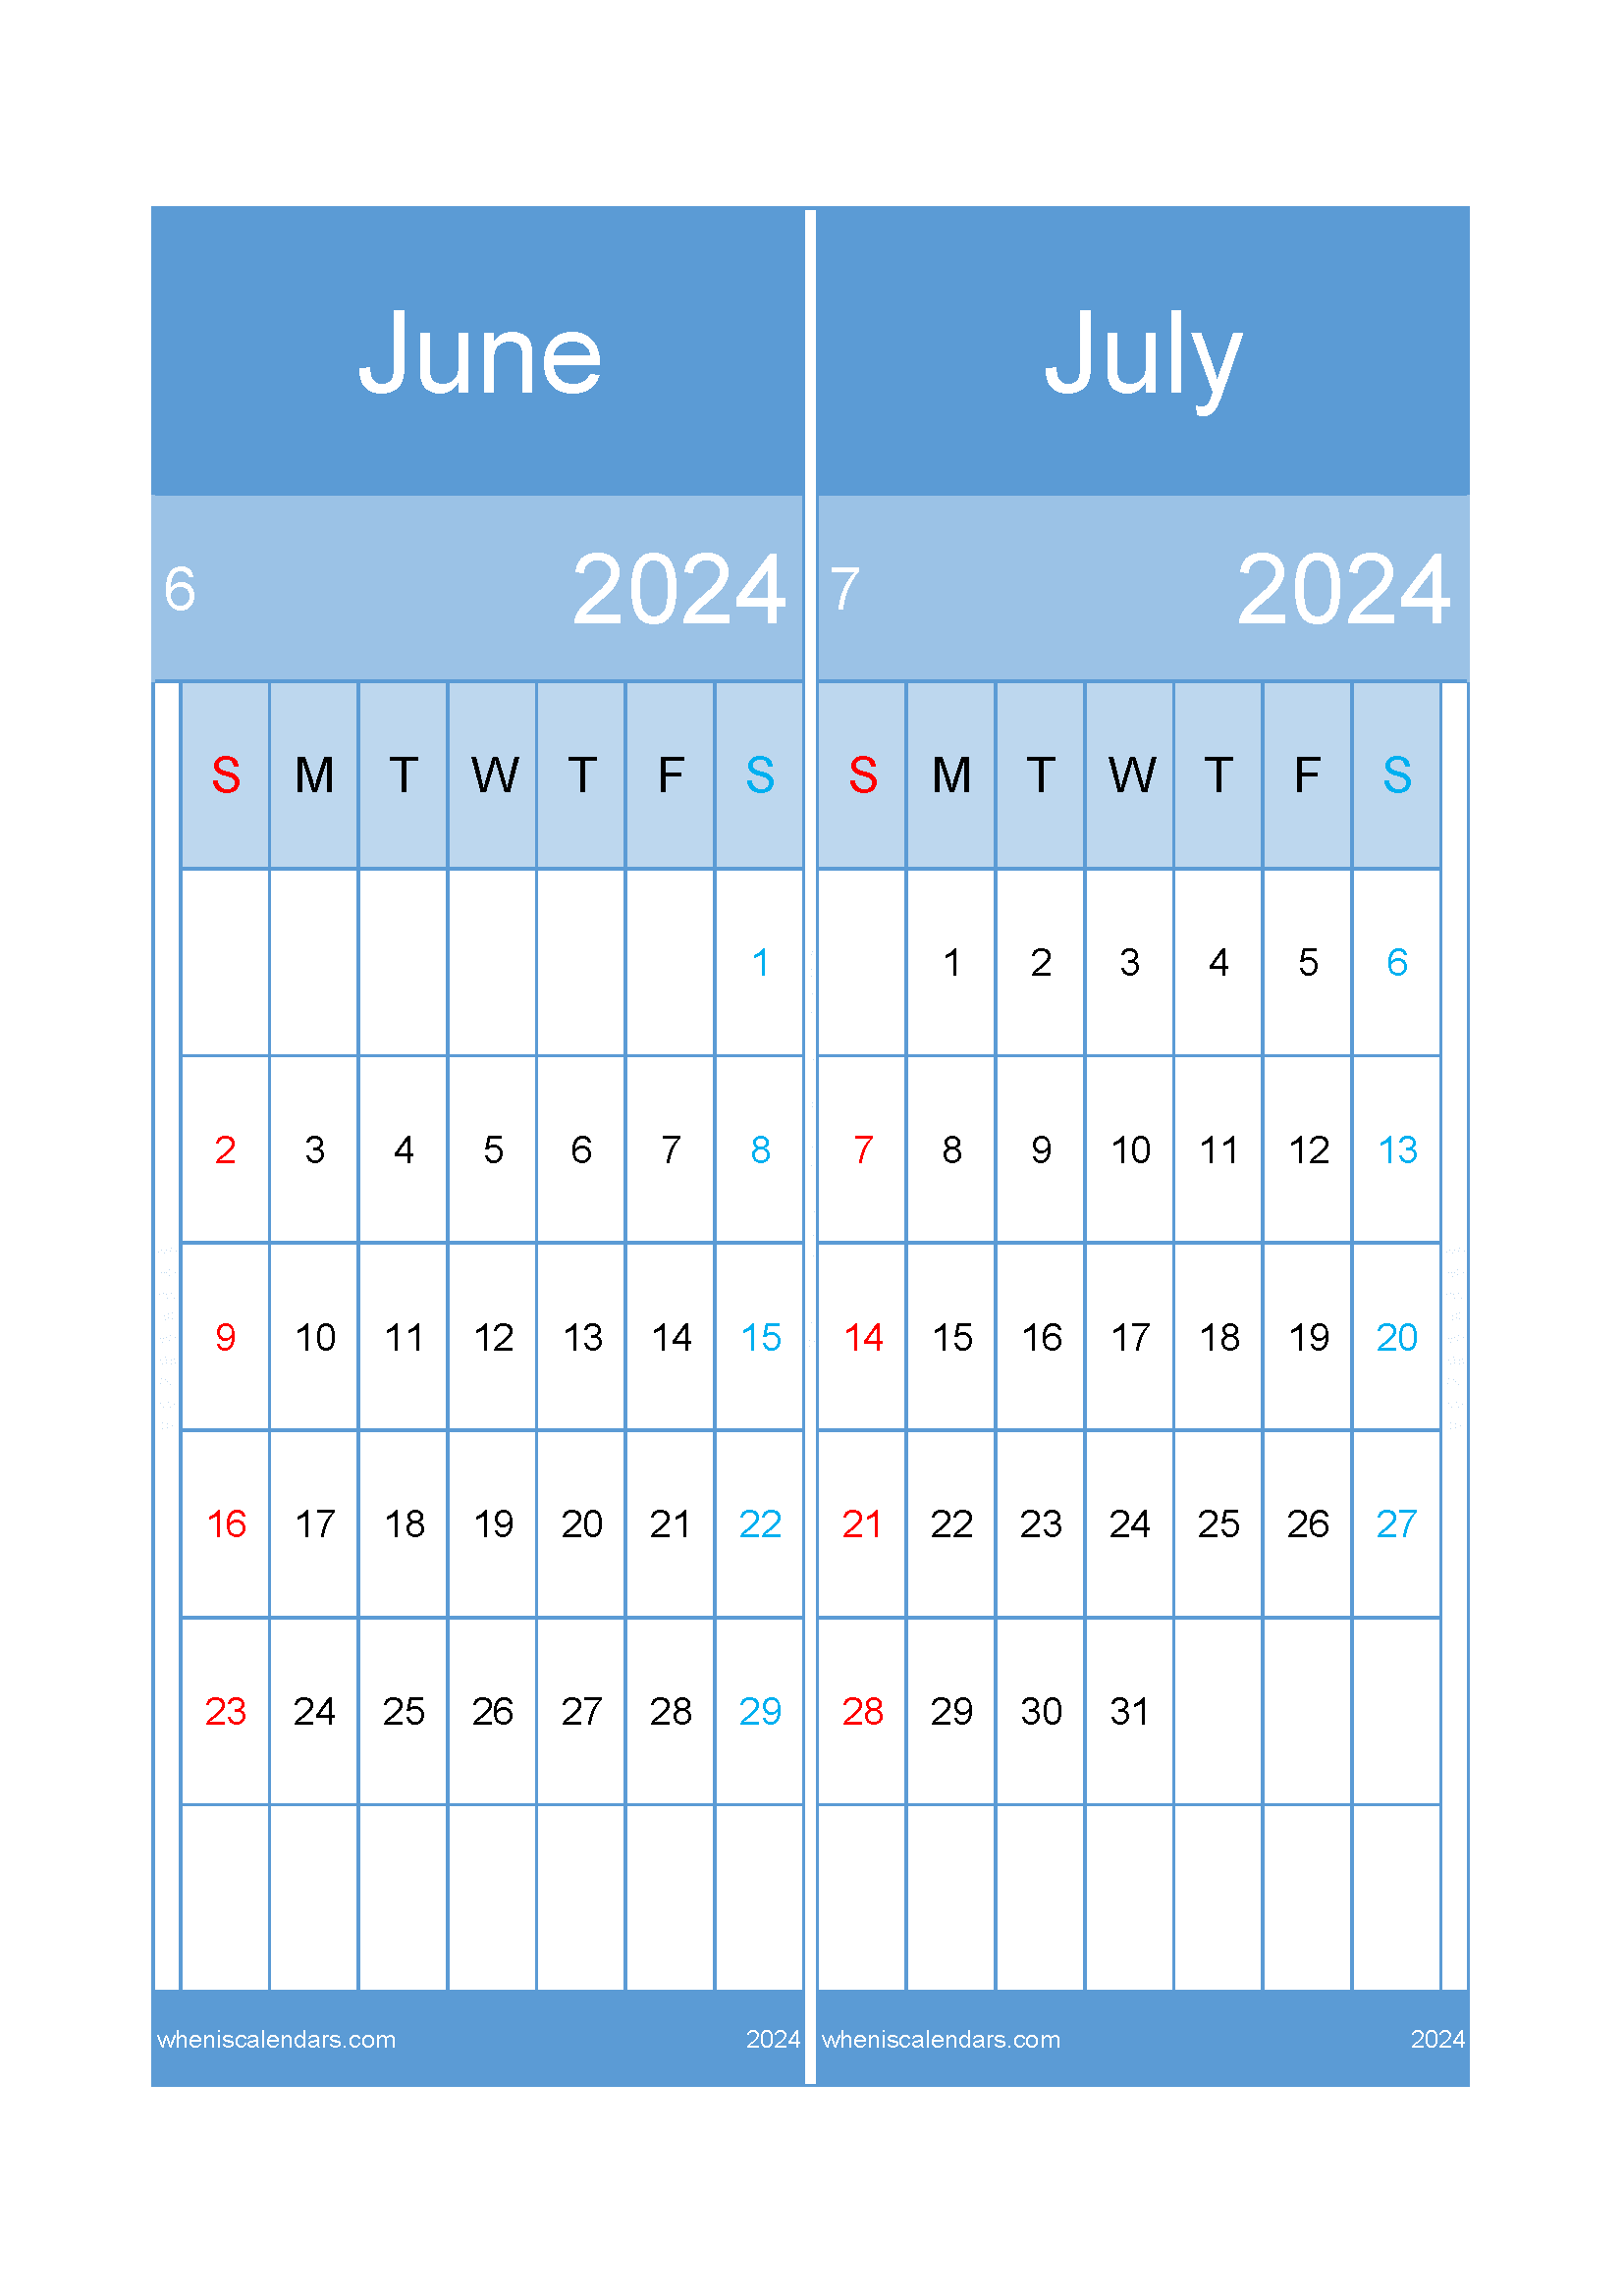 Download calendar Jun and July 2024 A4 JJ242021